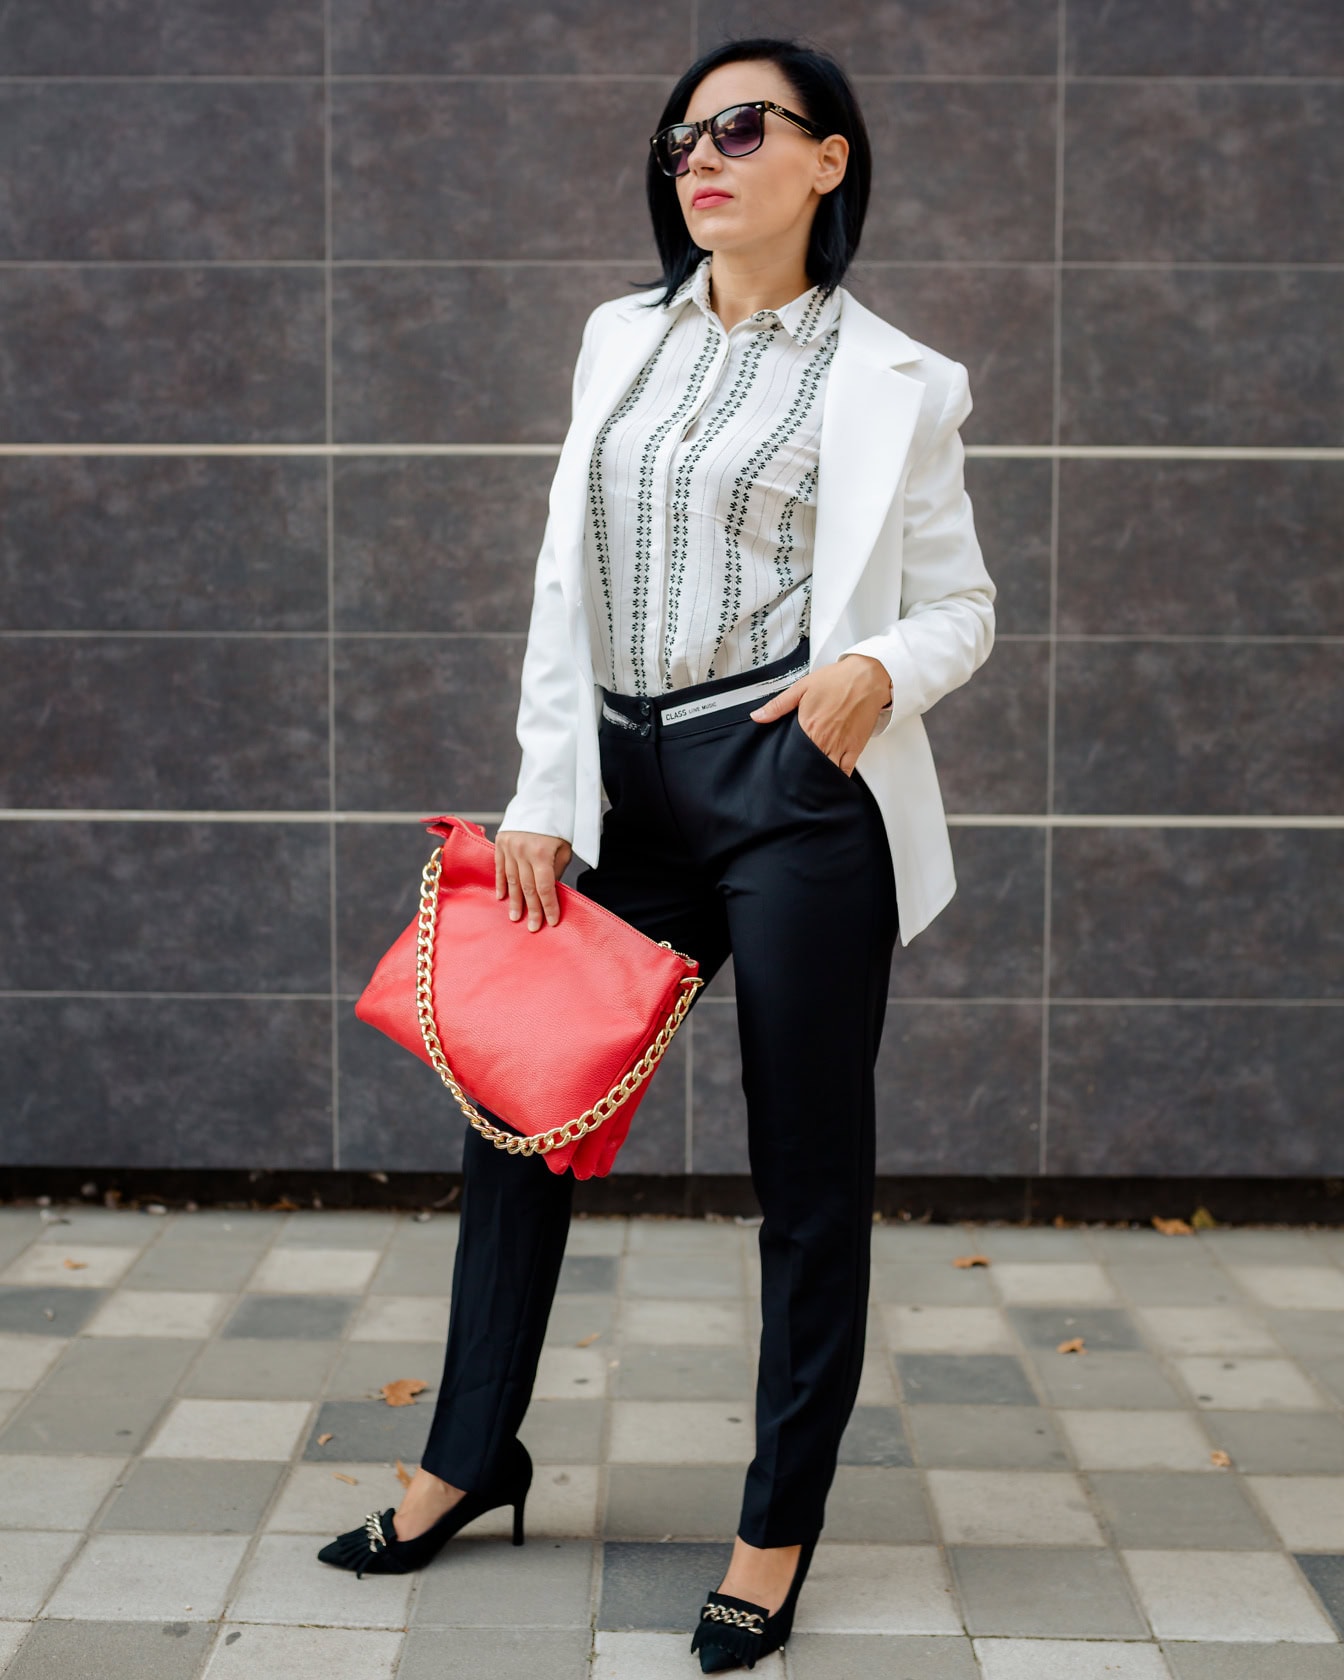 Przystojna bizneswoman pozuje w czarno-białym garniturze z czerwoną torebką ze złotym łańcuszkiem